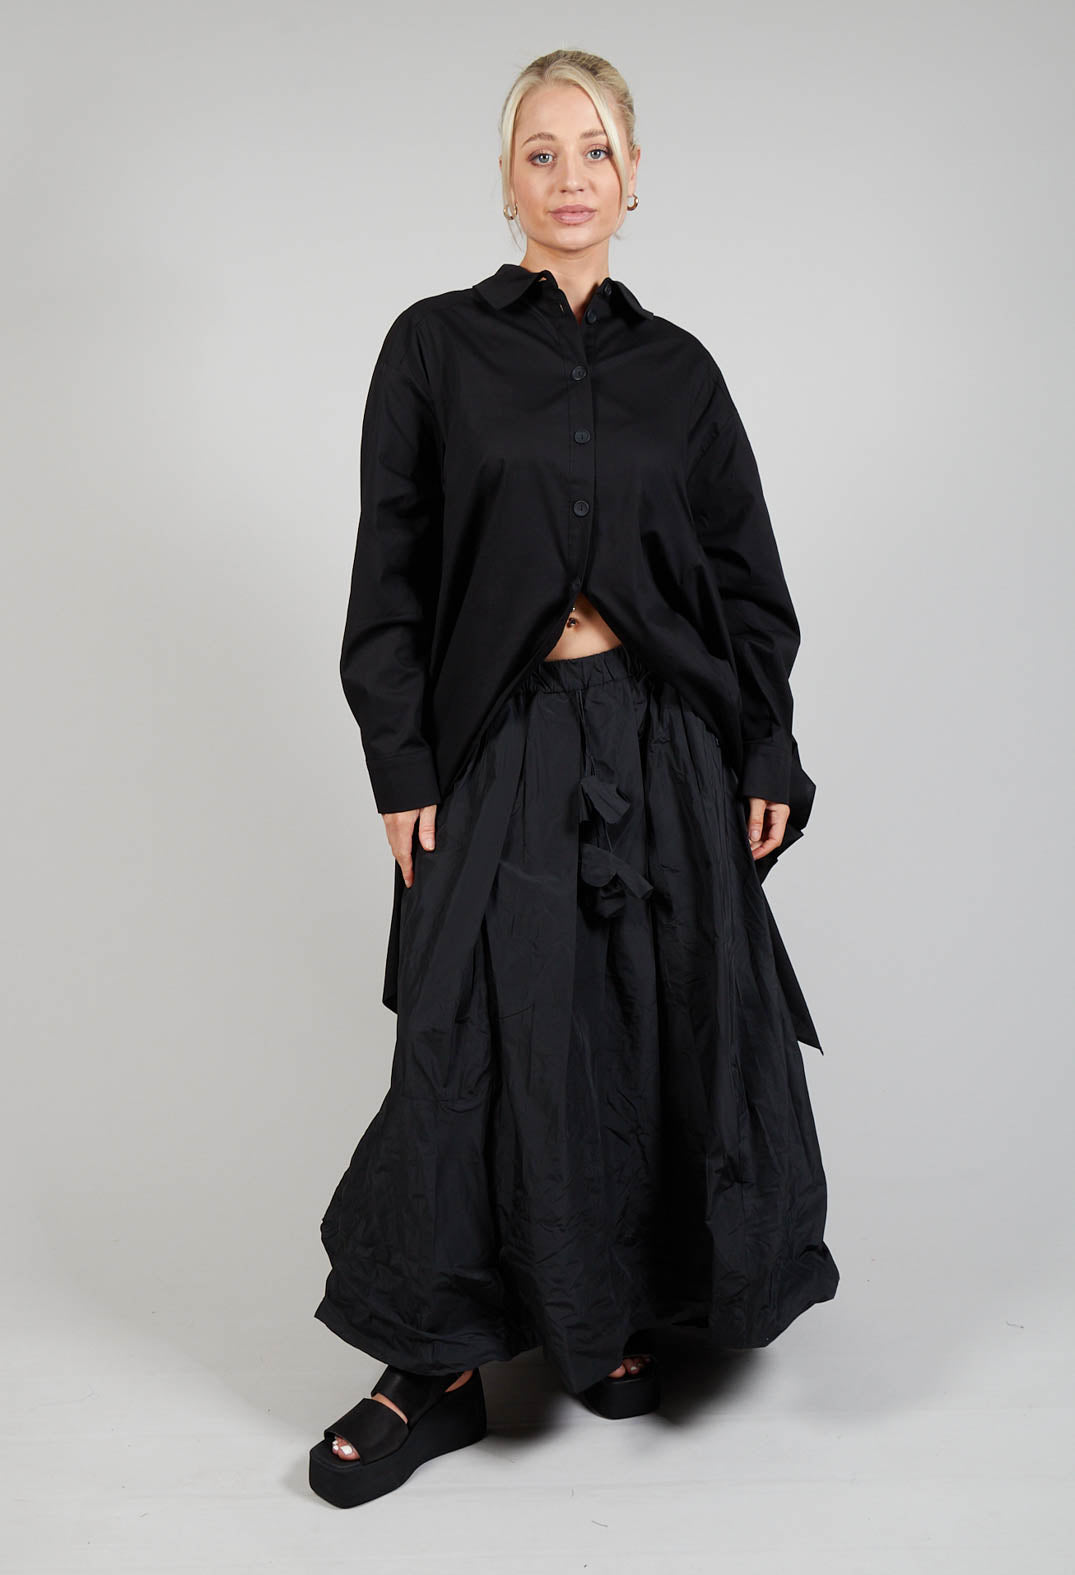 Dipped Hemline Skirt in Black